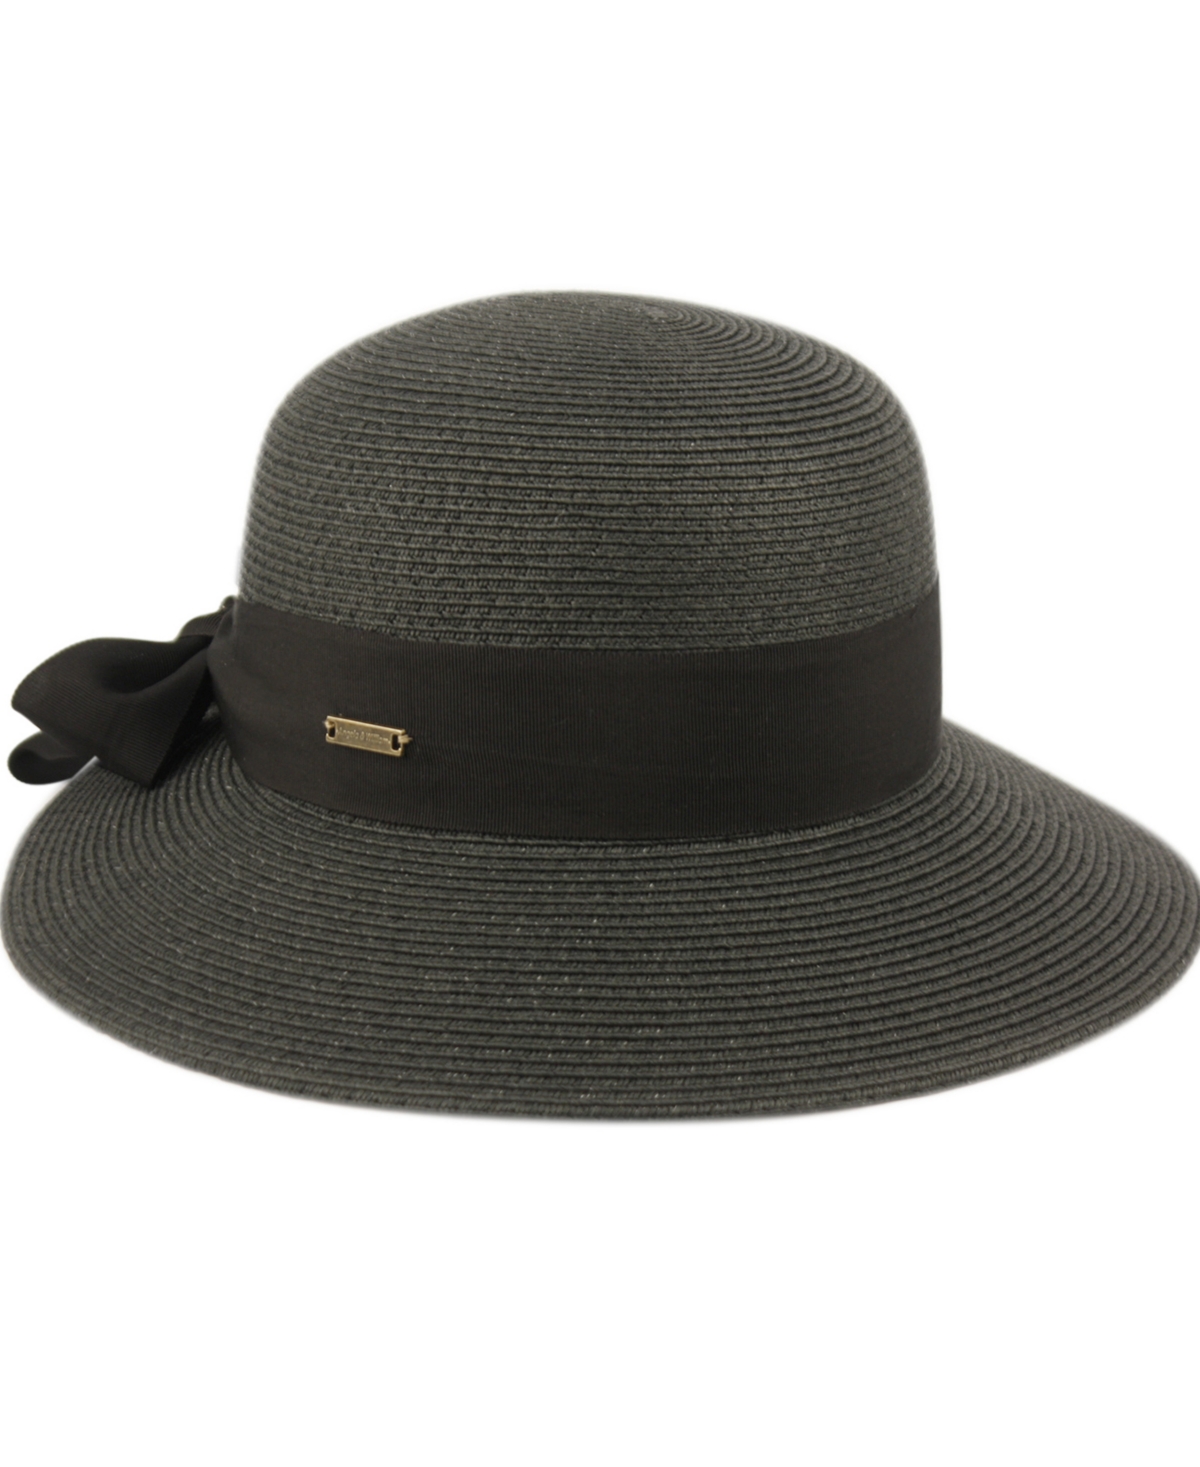 Shop Angela & William Women's Brimmed Beach Sun Straw Hat In Black